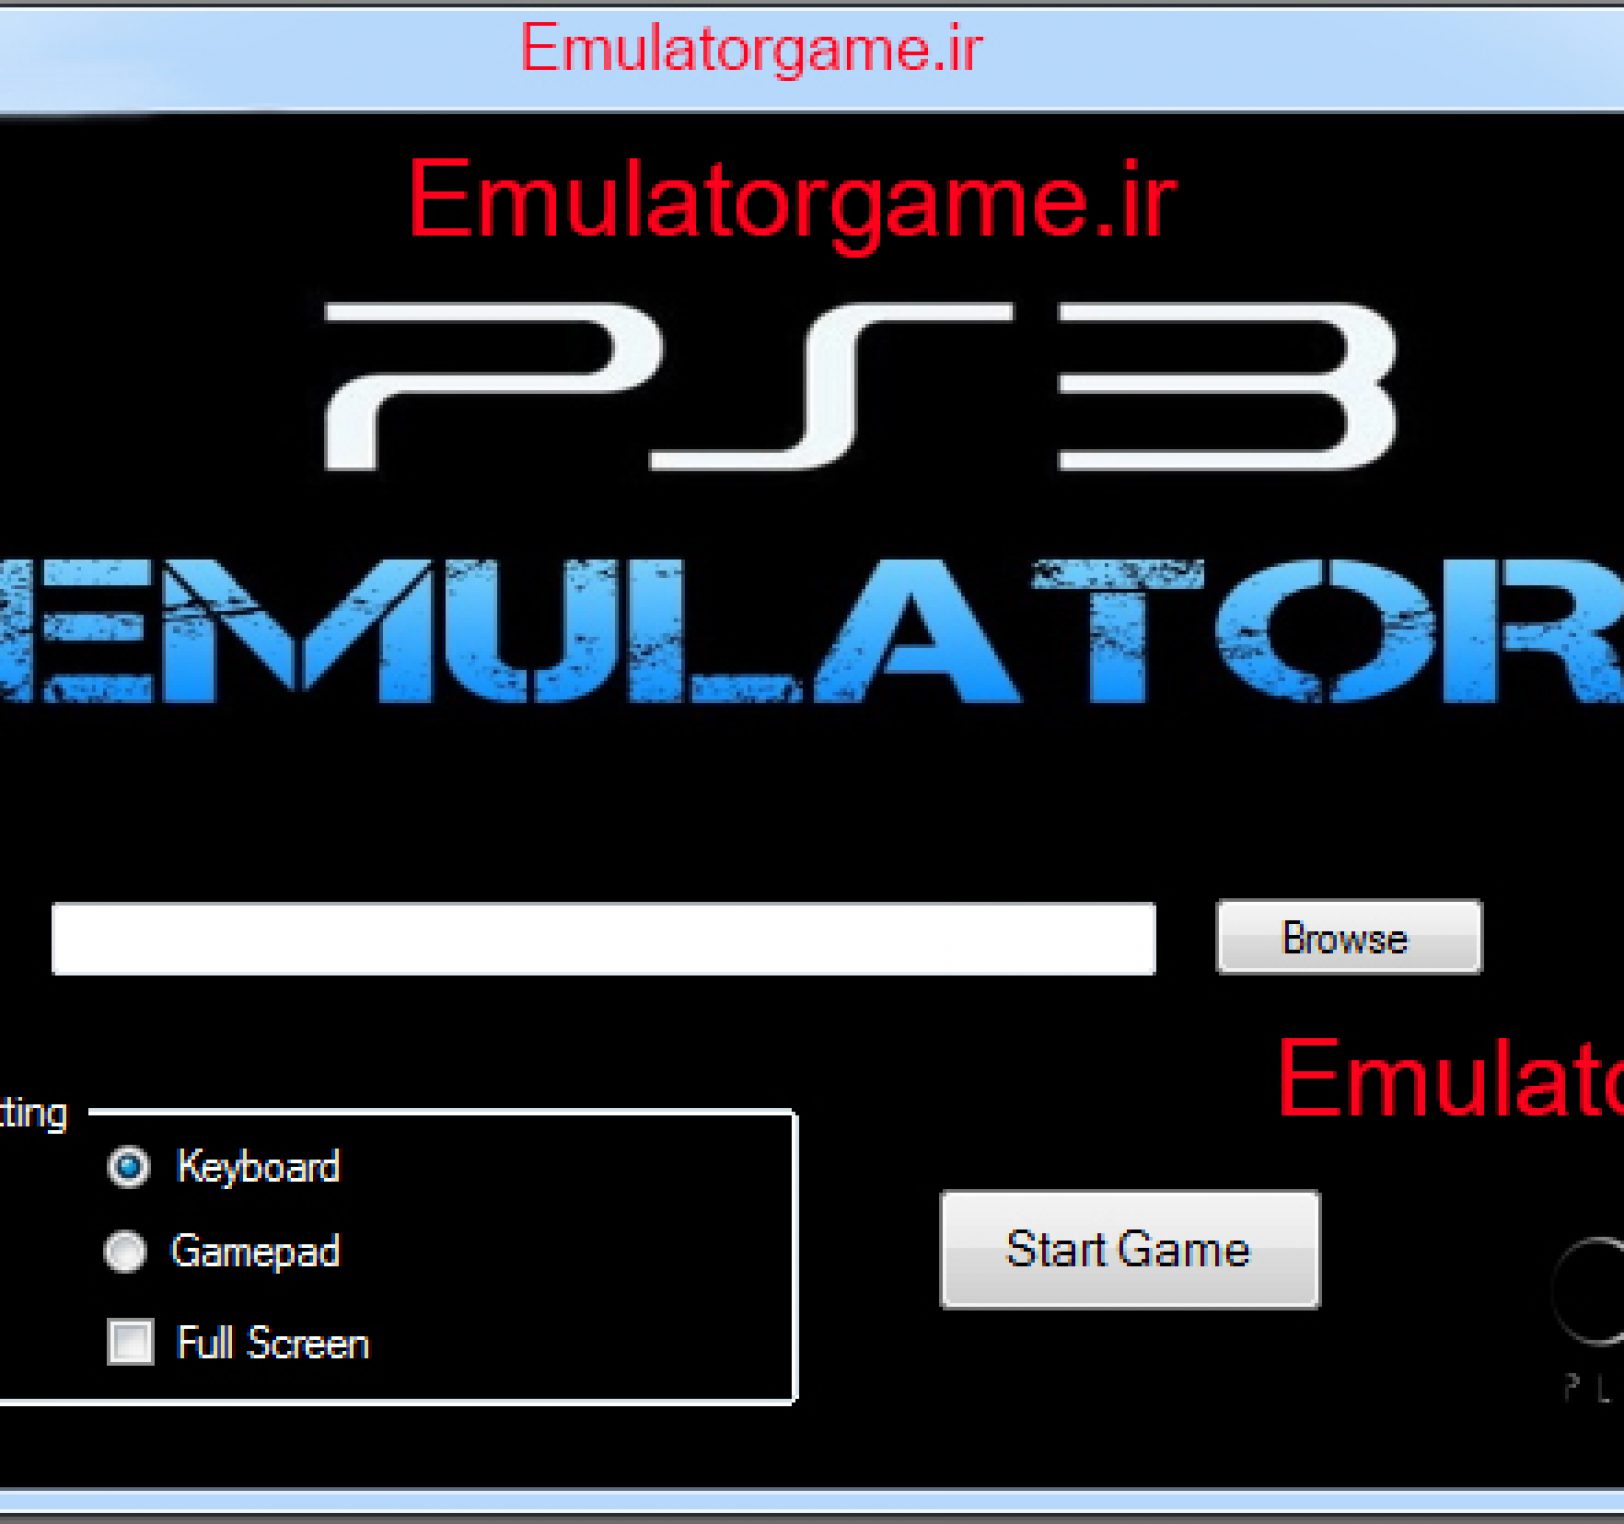 دانلود نرم افزار اجرای emulator ps3 کامپیوتر 2016